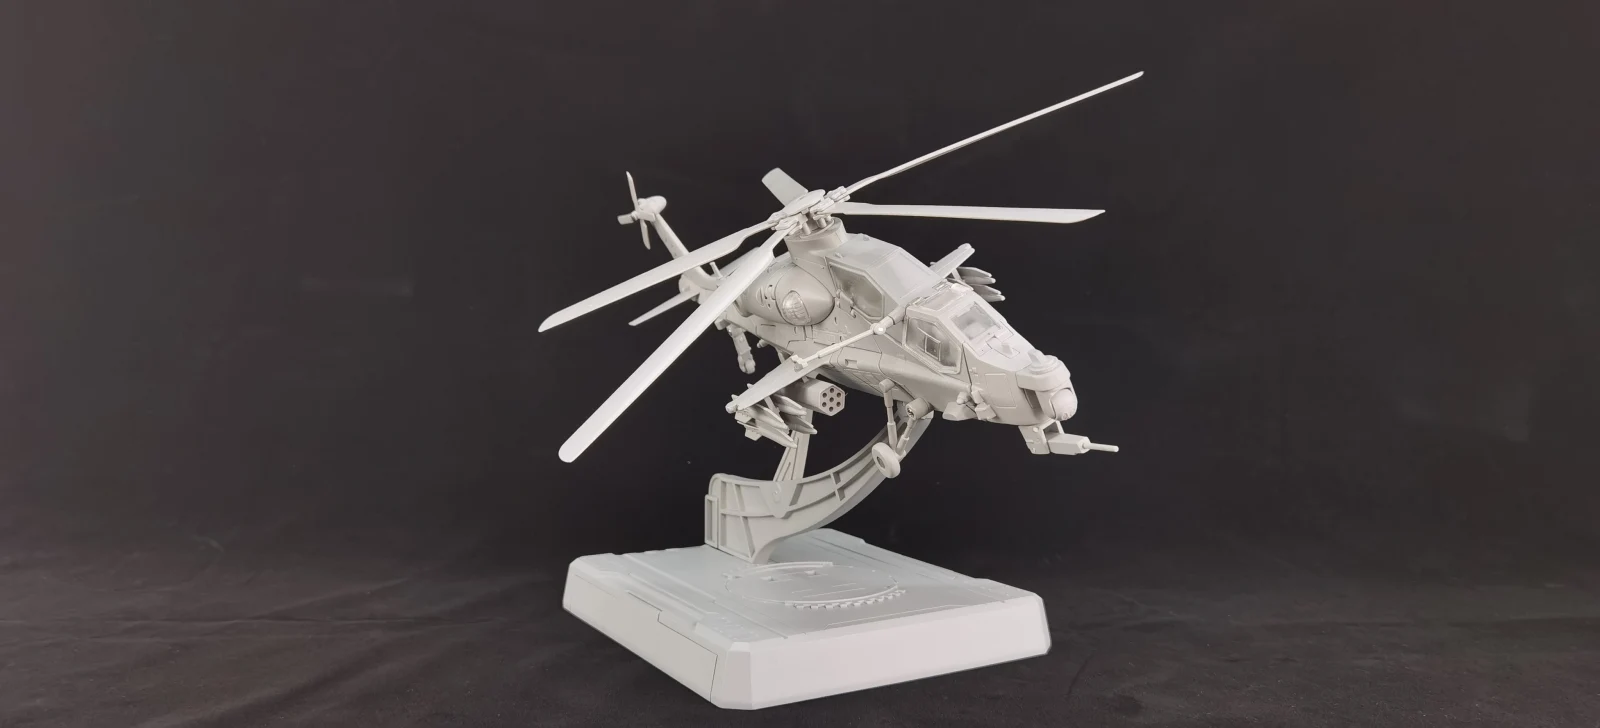 神机工业直升机可变机甲暗鸮灰模展出！预计今年Q3发售